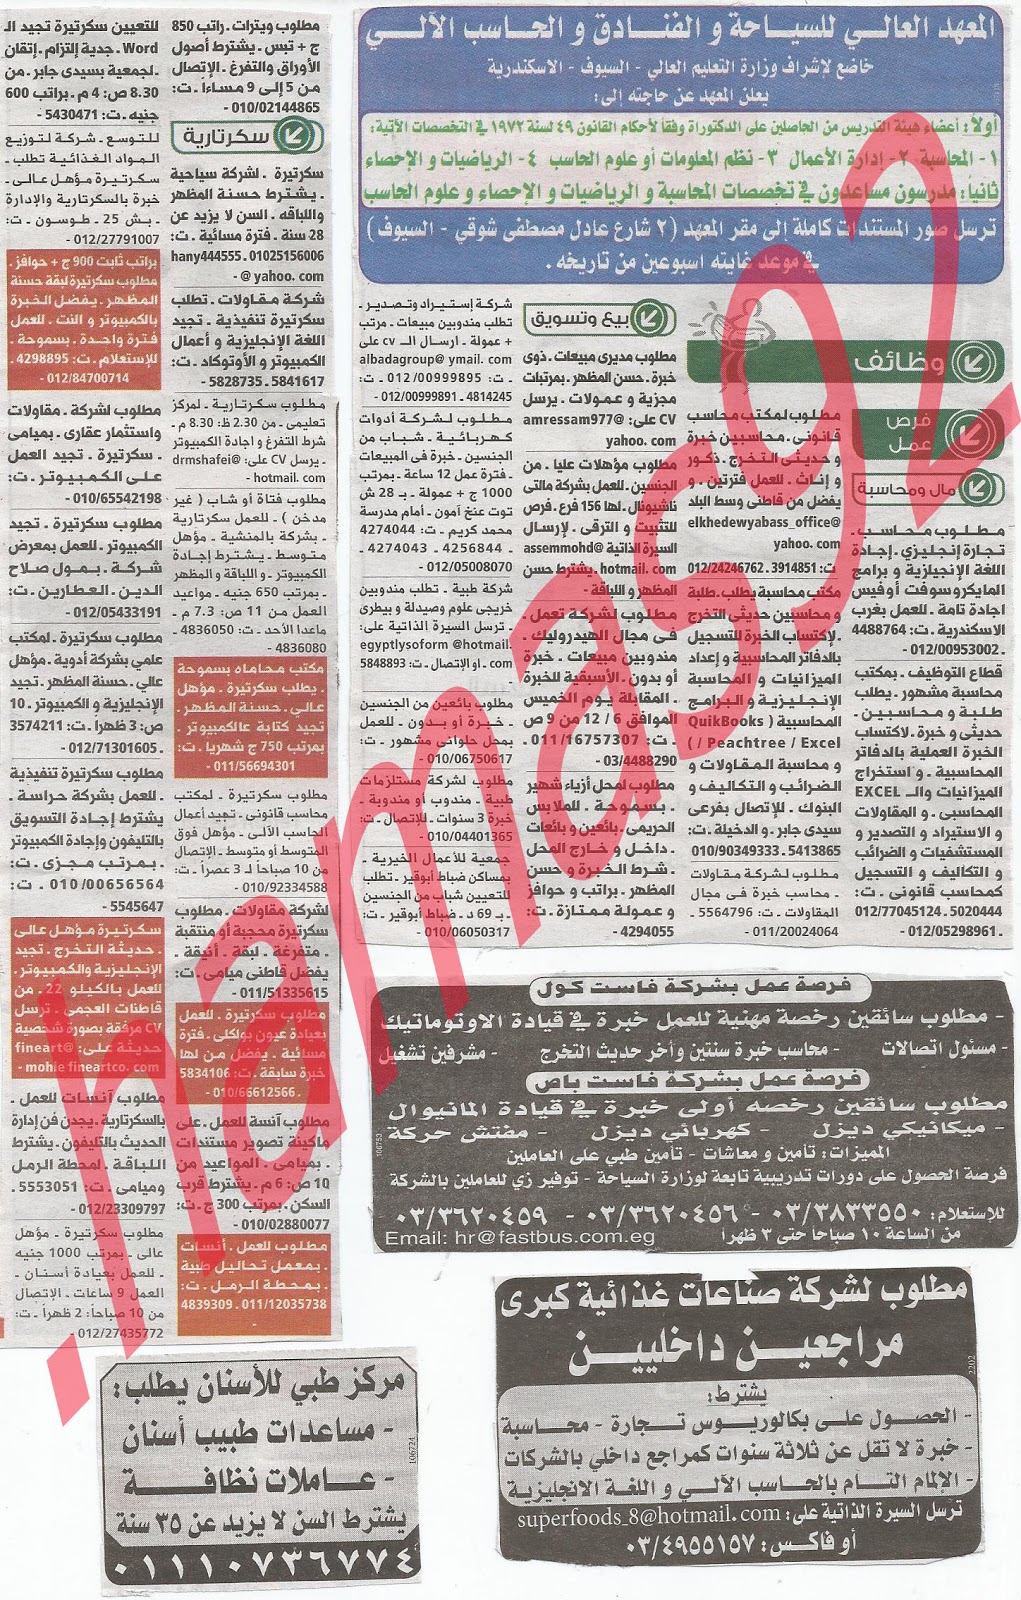 وظائف خالية من جريدة الوسيط الاسكندرية الثلاثاء 4/12/2012 - وظائف عديدة %D9%88+%D8%B3+%D8%B3+5